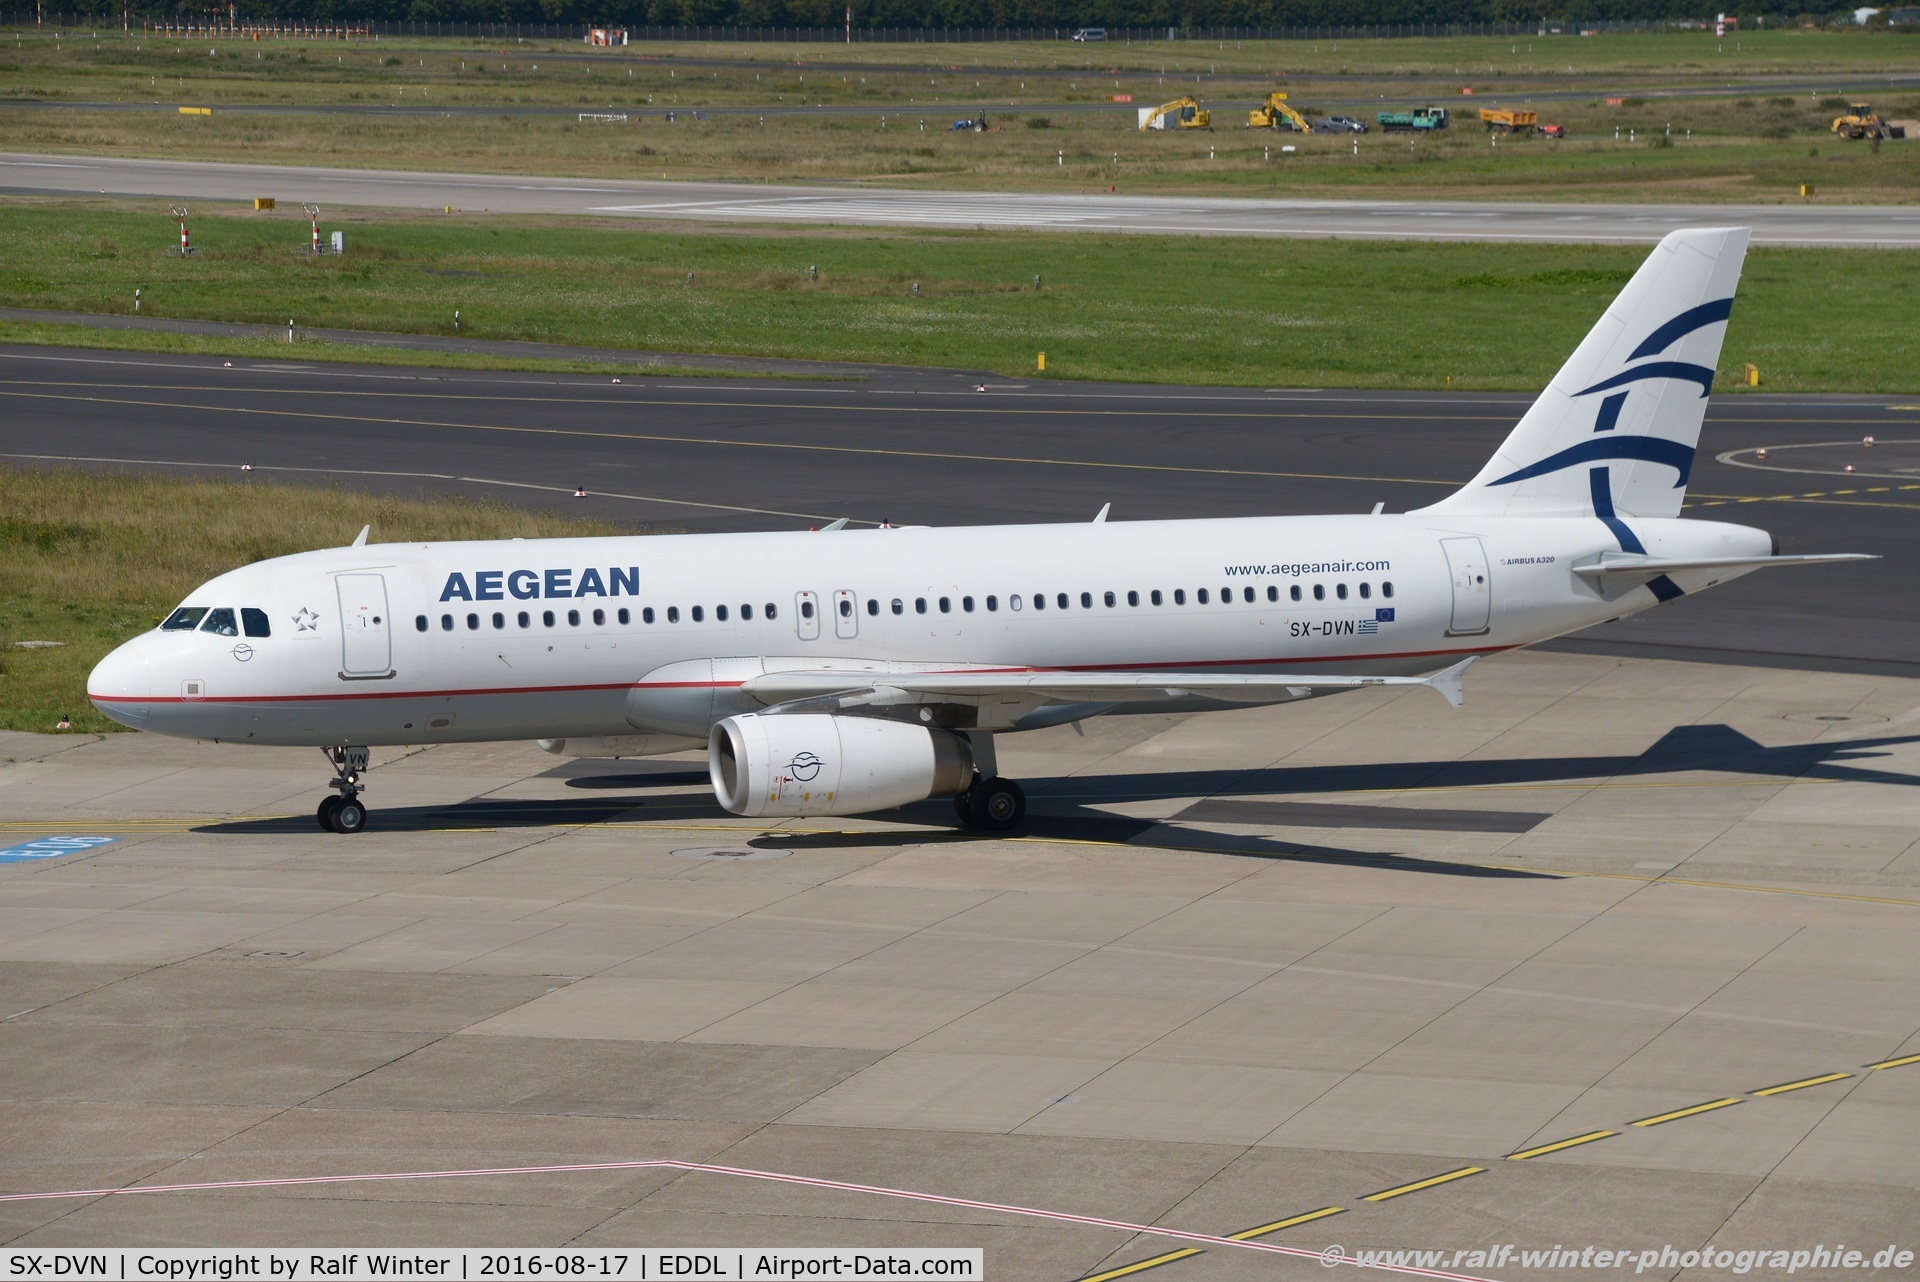 SX-DVN, 2008 Airbus A320-232 C/N 3478, Airbus A320-232 - A3 AEE Aegean Airlines - 3478 - SX-DVN - 17.08.2016 - DUS